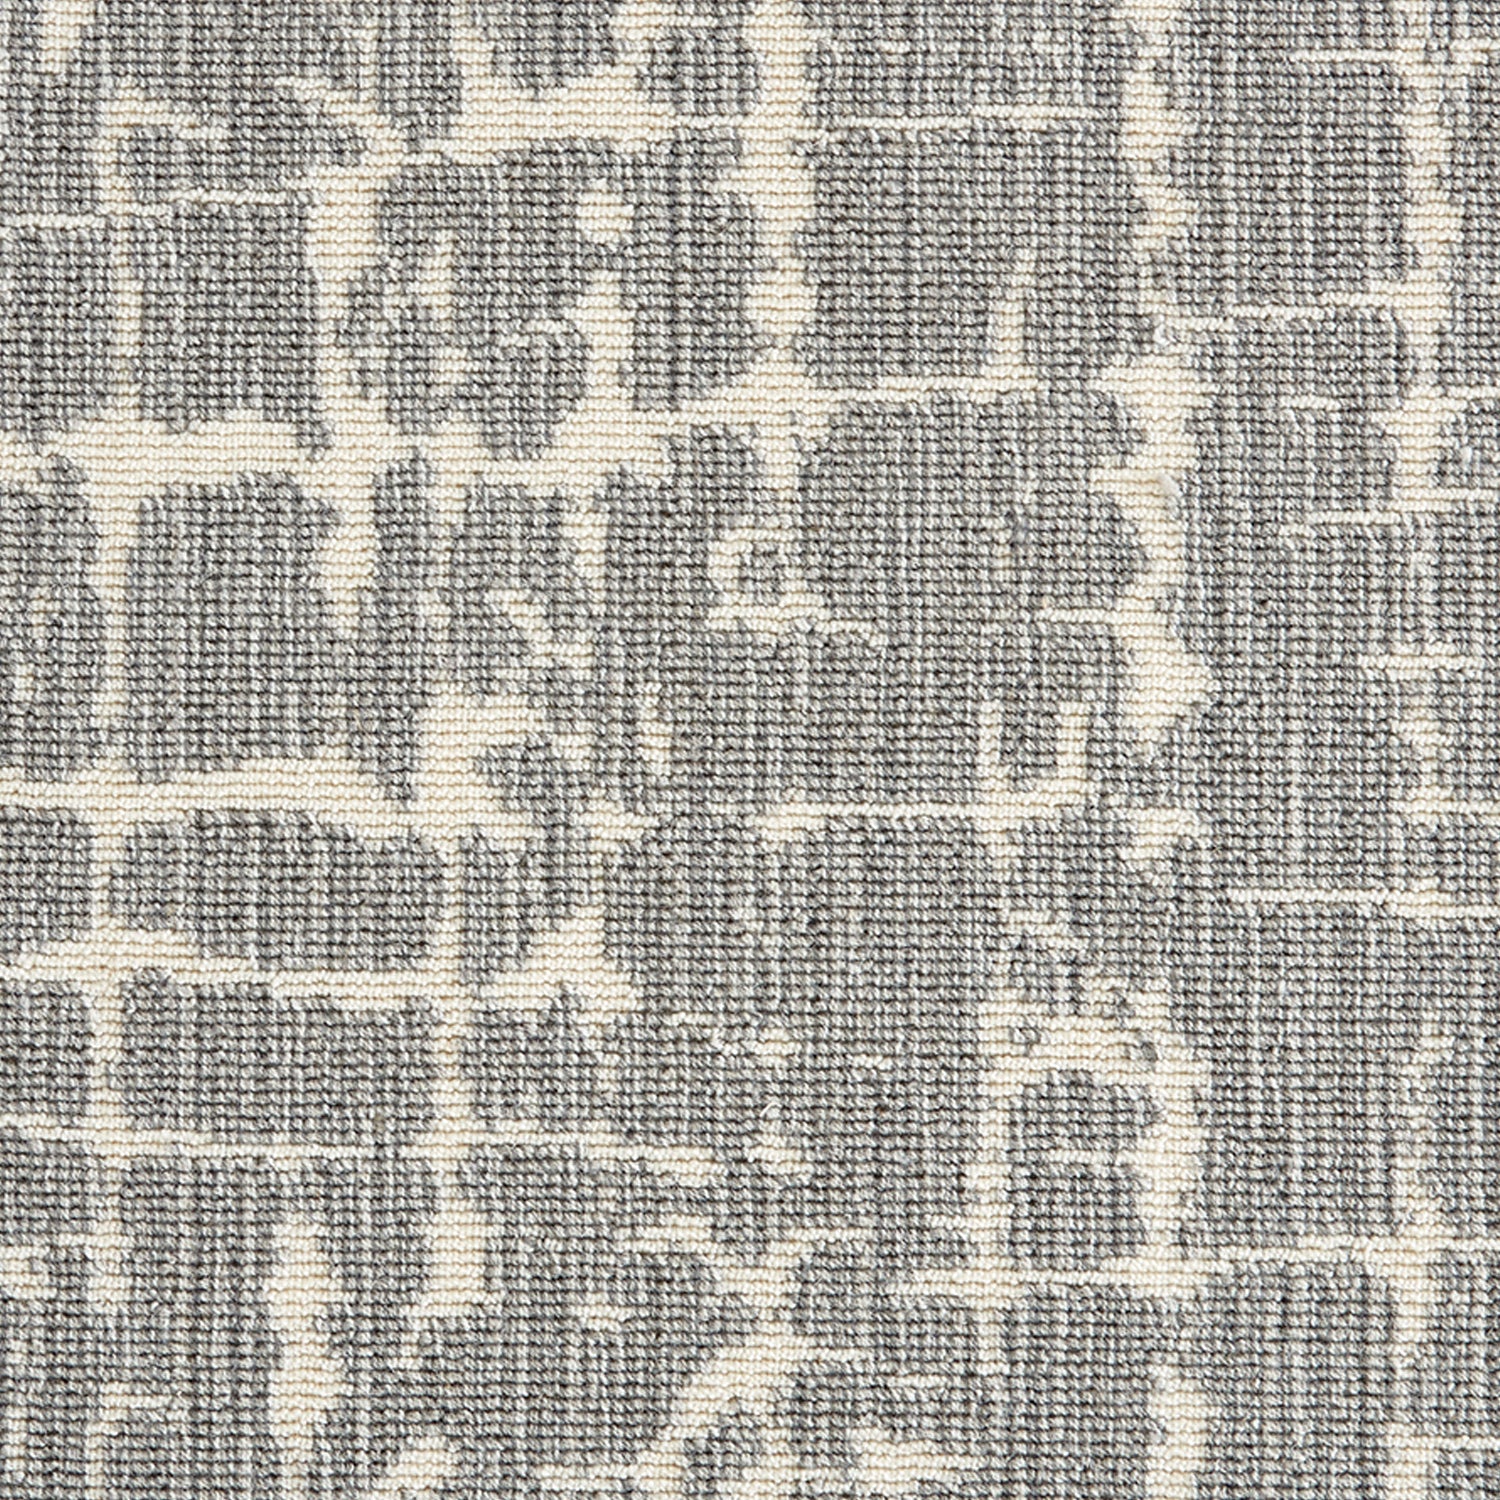 Wool-blend broadloom carpet swatch in an abstract grid pattern in tan on a mottled gray field.